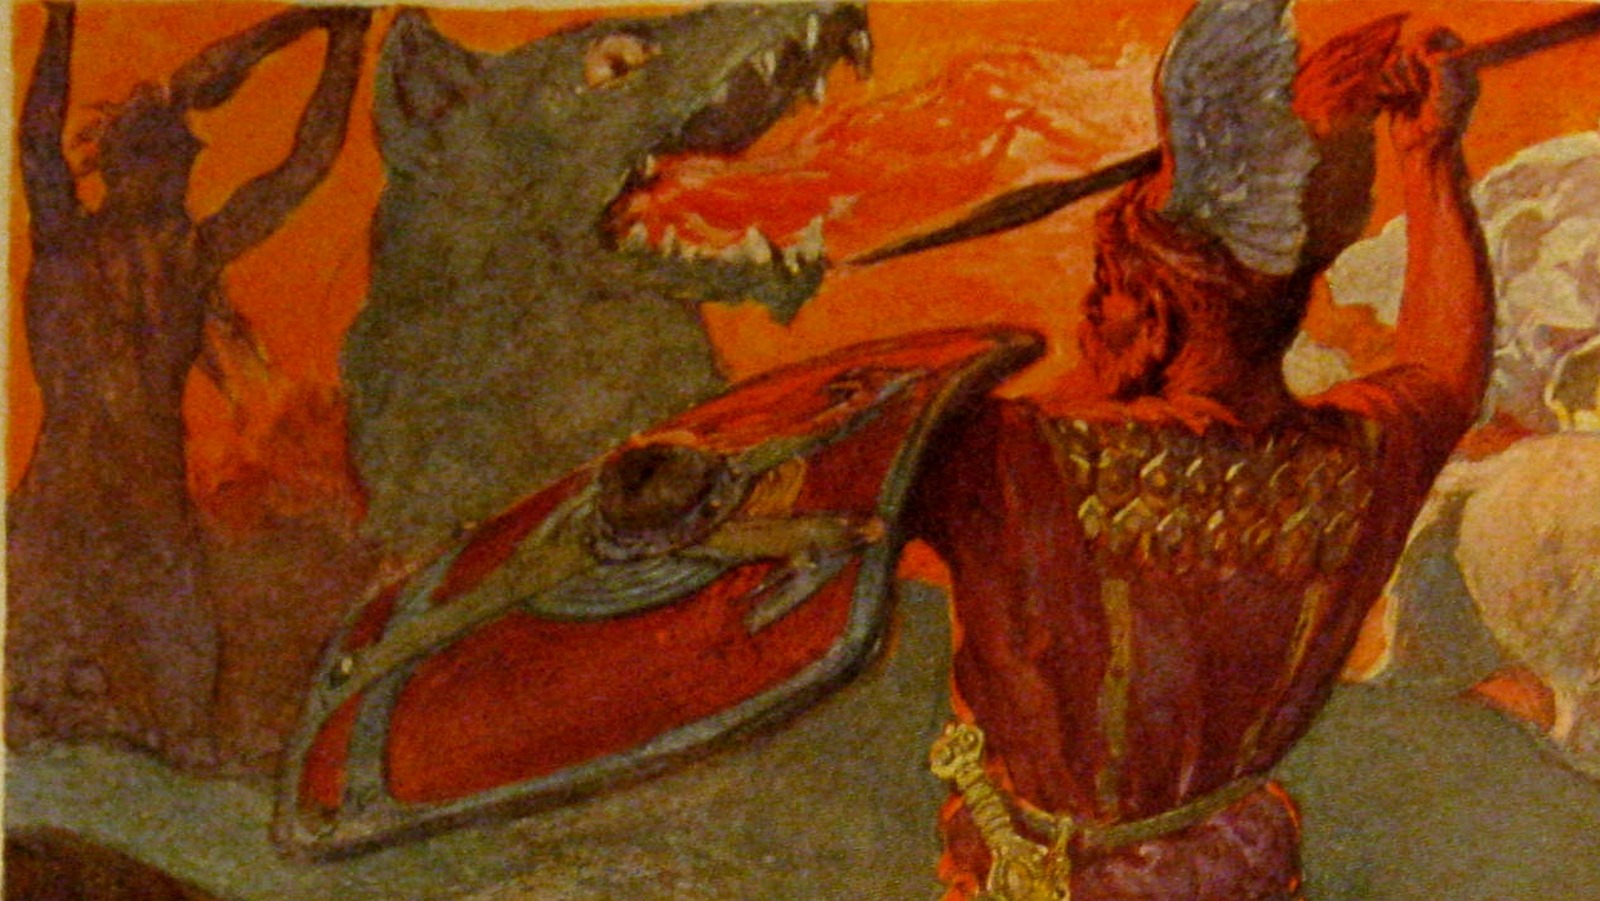 Odin, Myth & History